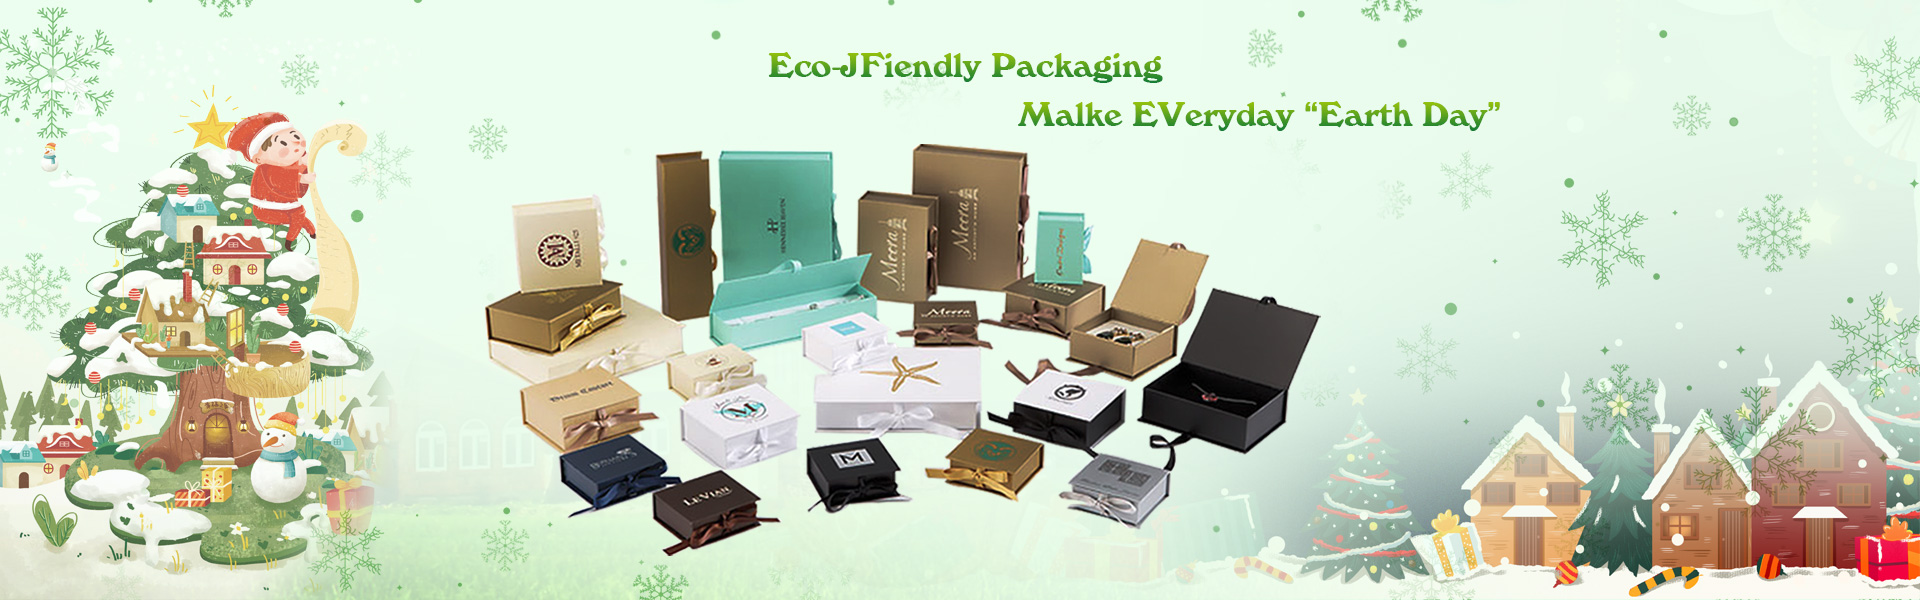 علبة هدية، مربع التعبئة، التسمية,Dongguan chengyuan packaging products Co,.Ltd